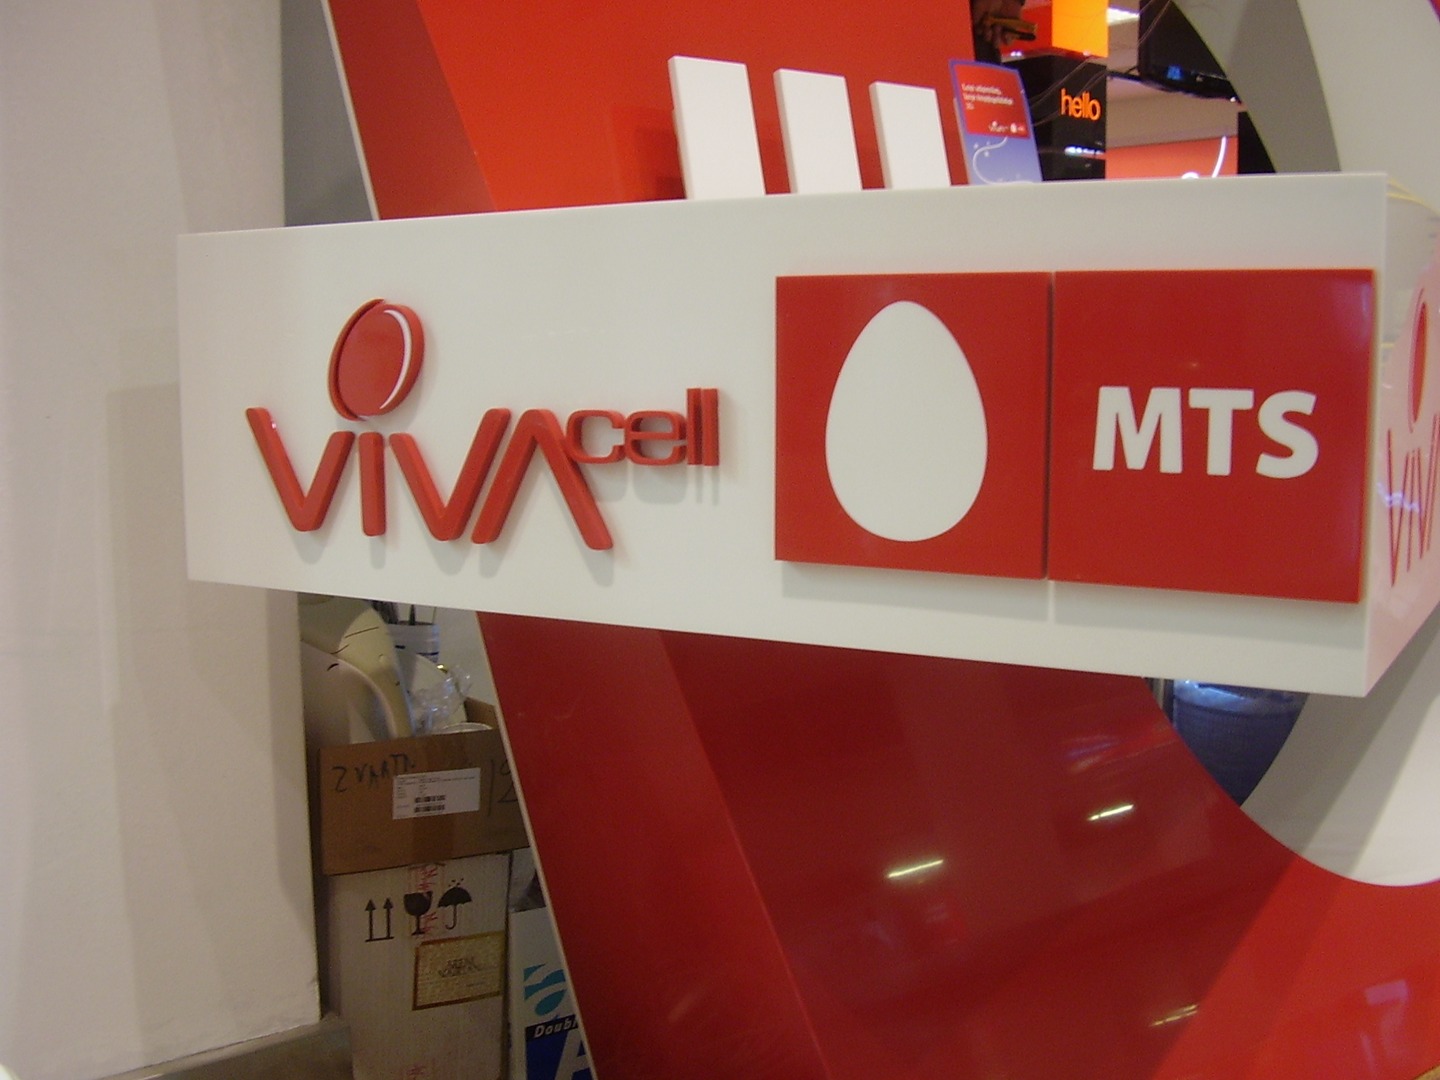 VivaCell-MTS: Дополнительный двойной интернет в сети 4G для абонентов тарифного плана "Viva"